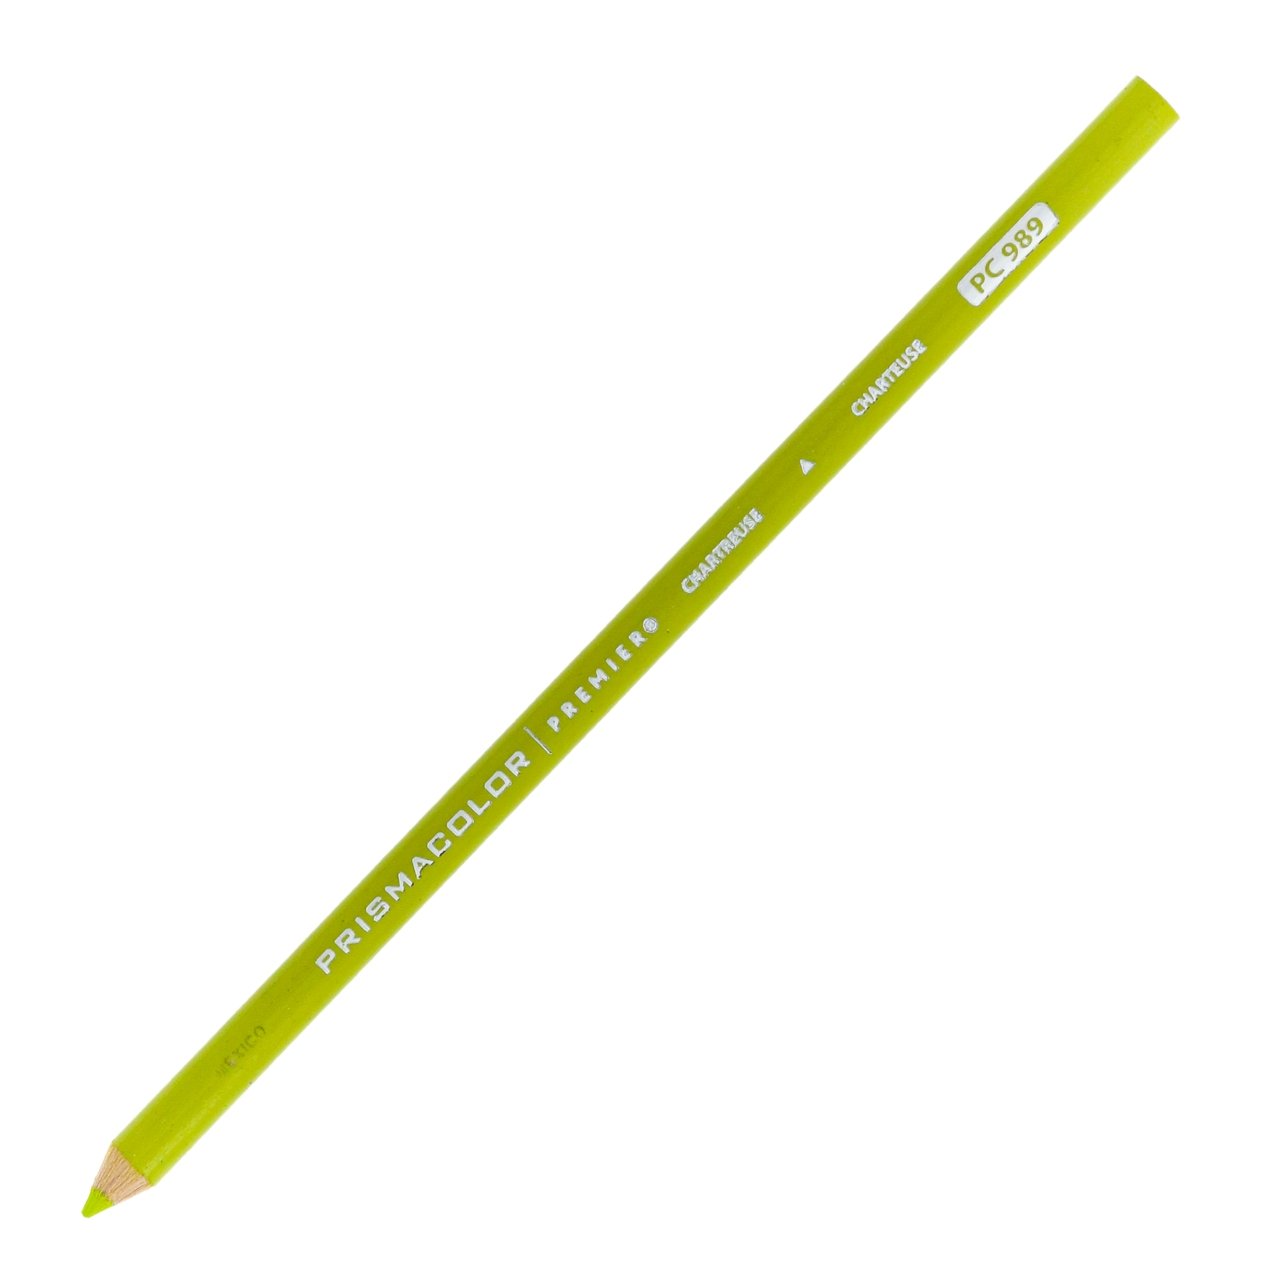 Prismacolor Premier Colored Pencil - Chartreuse 989 - merriartist.com